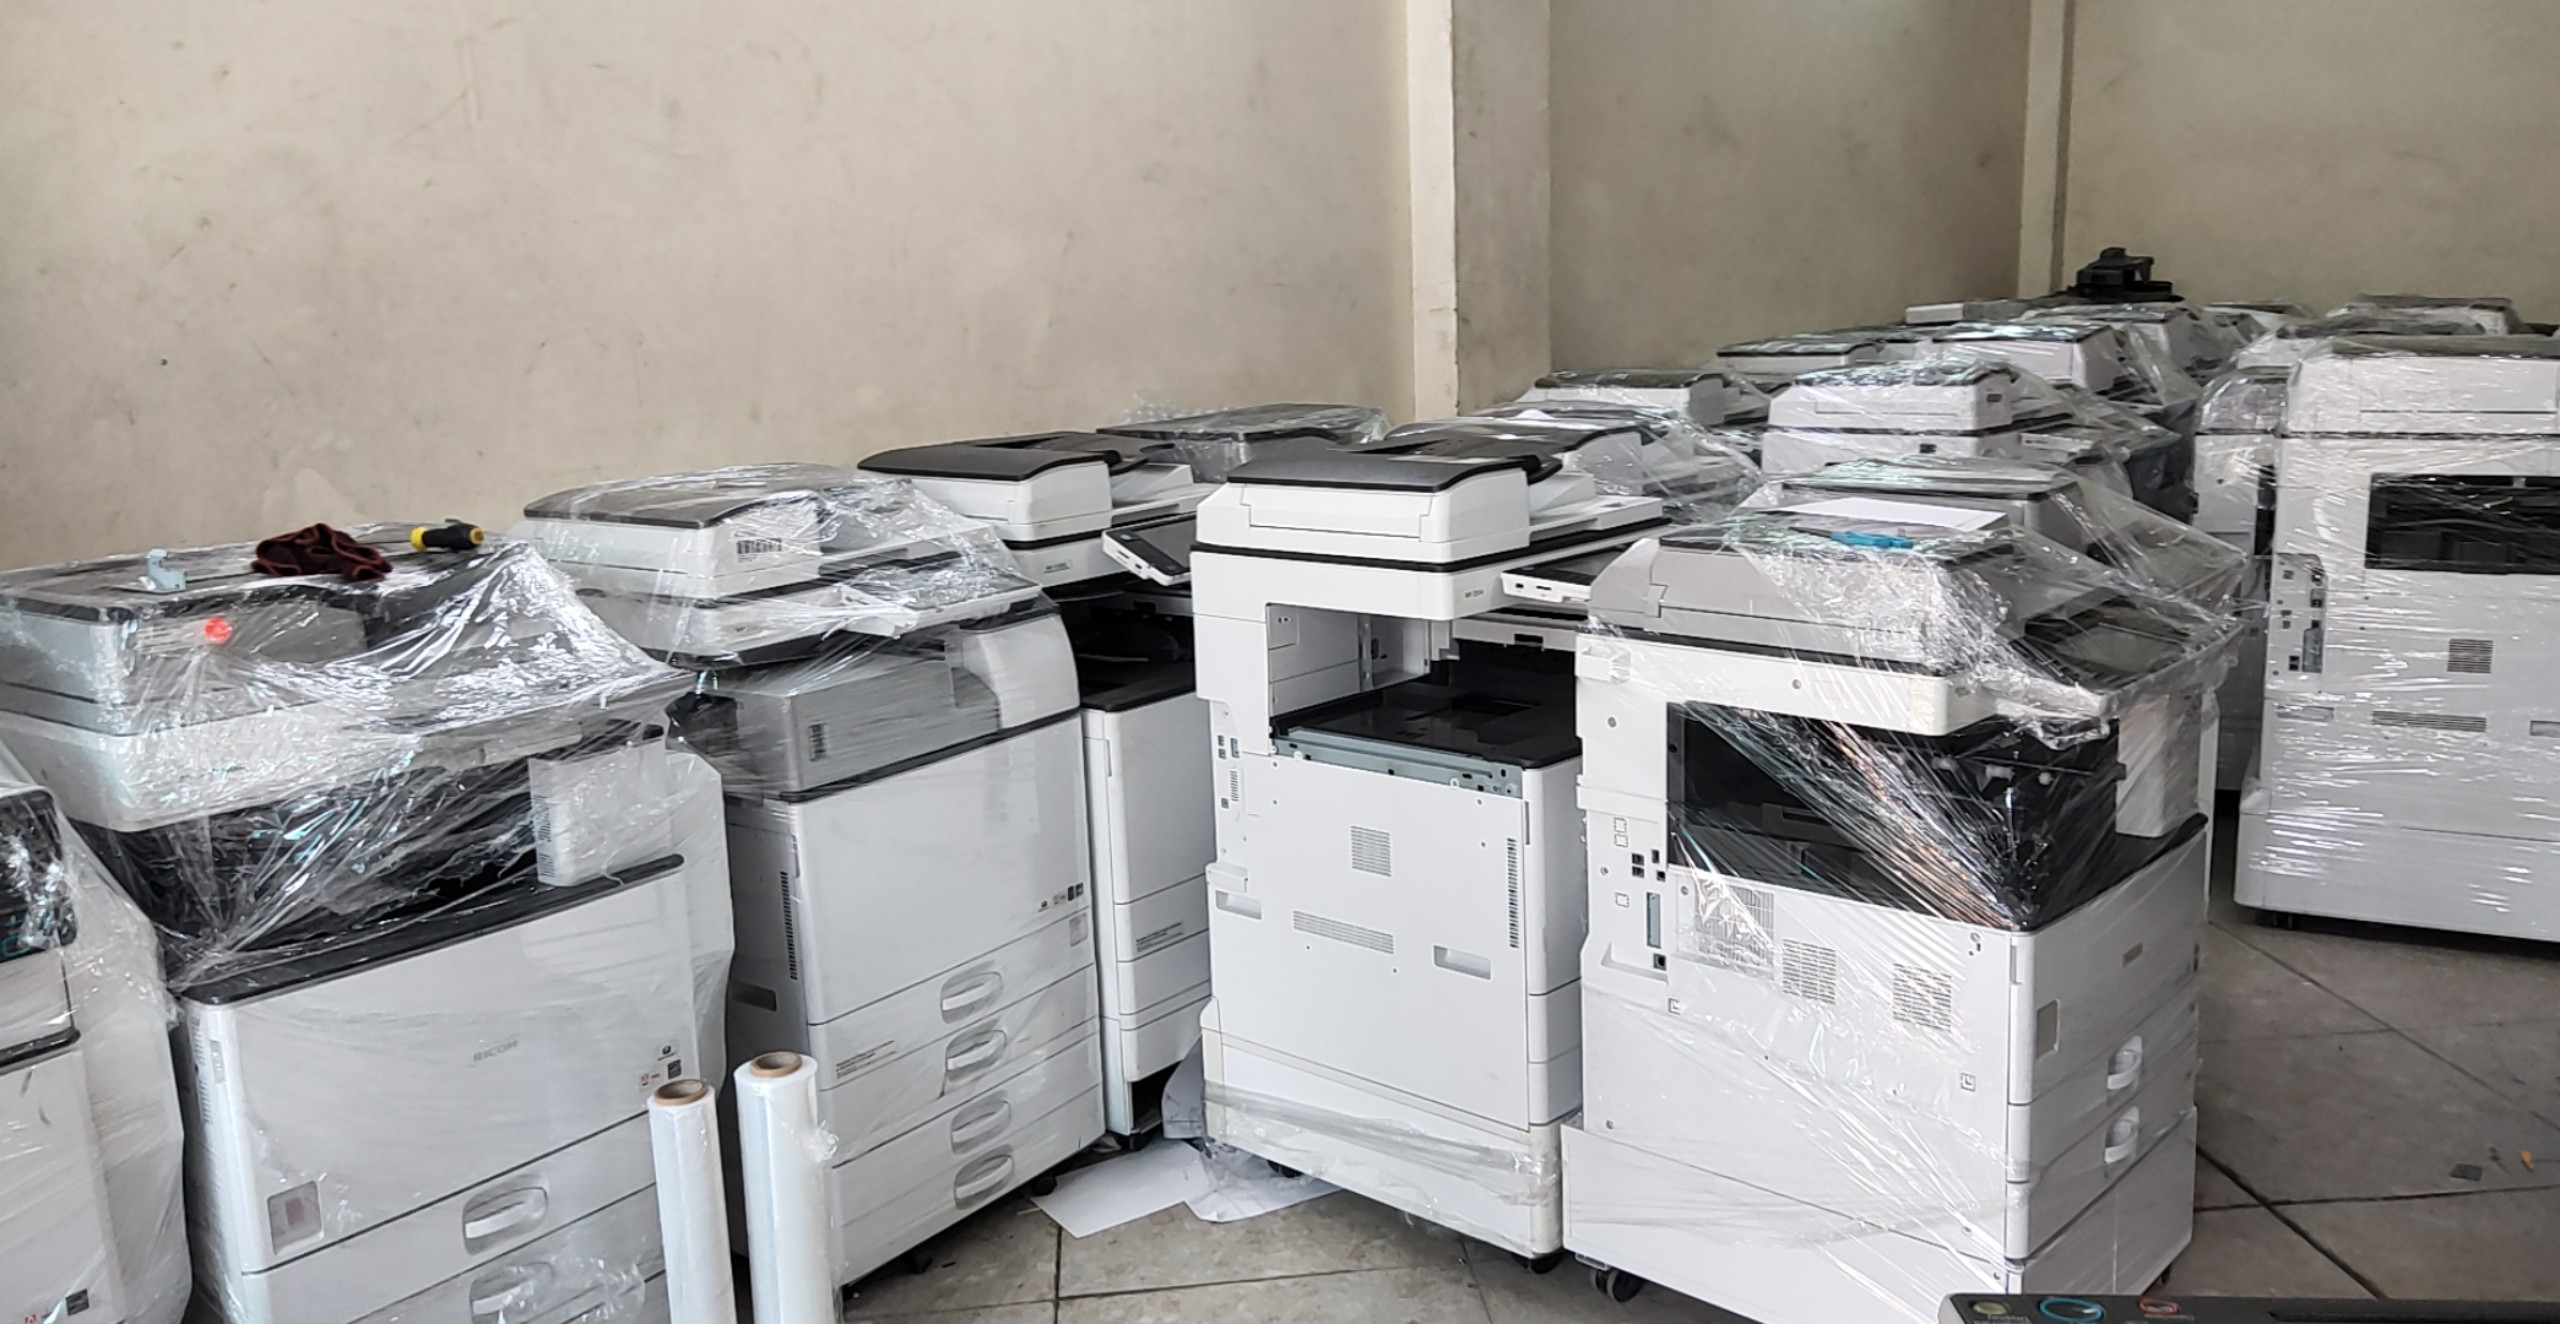 Thanh lý, bán máy photocopy giá rẻ tại Hải Dương, Hưng Yên, Hà Nội